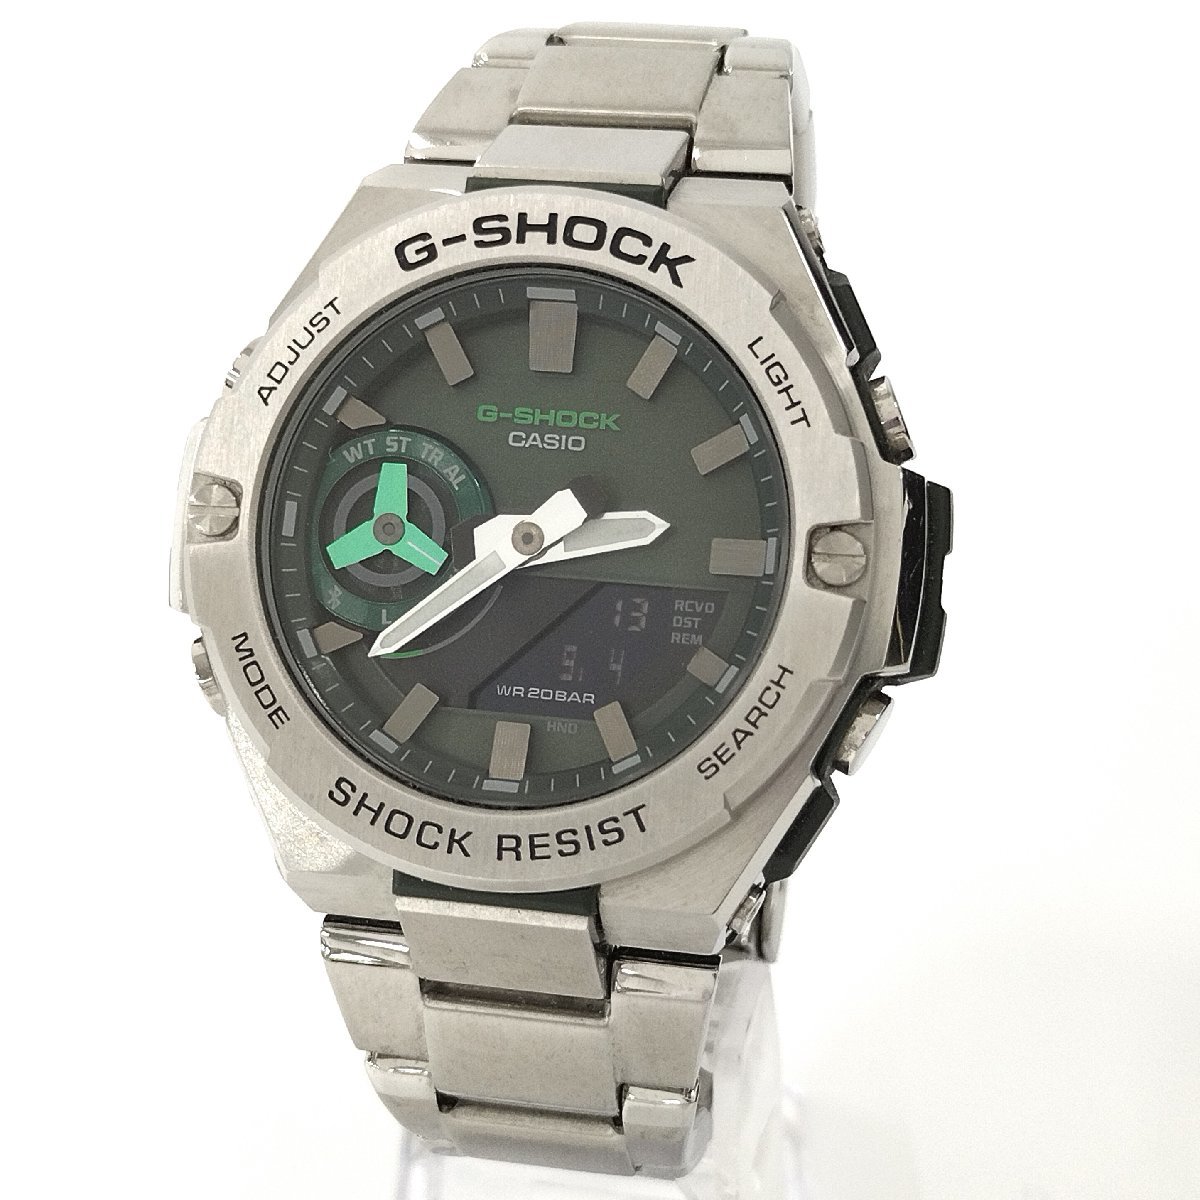 ●CASIO カシオ G-SHOCK GST-B500AD-3A シルバー メンズ 腕時計 グリーン文字盤 タフソーラー Gショック 中古[ne]u375_画像1